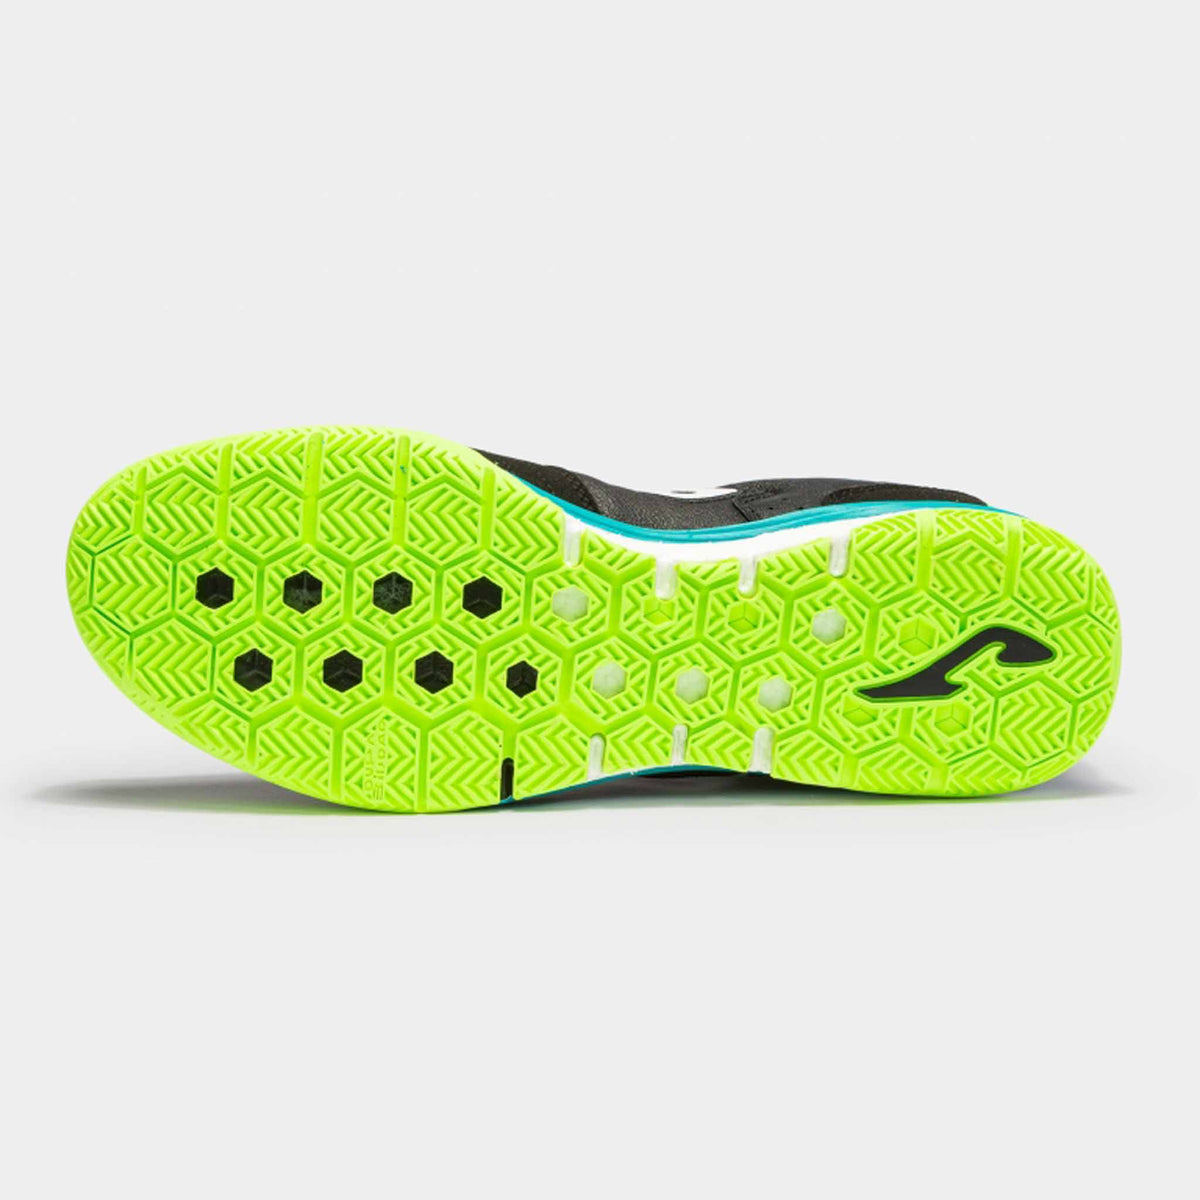 Joma Top Flex Rebound futsal chaussures de soccer interieur adulte - Noir / Vert